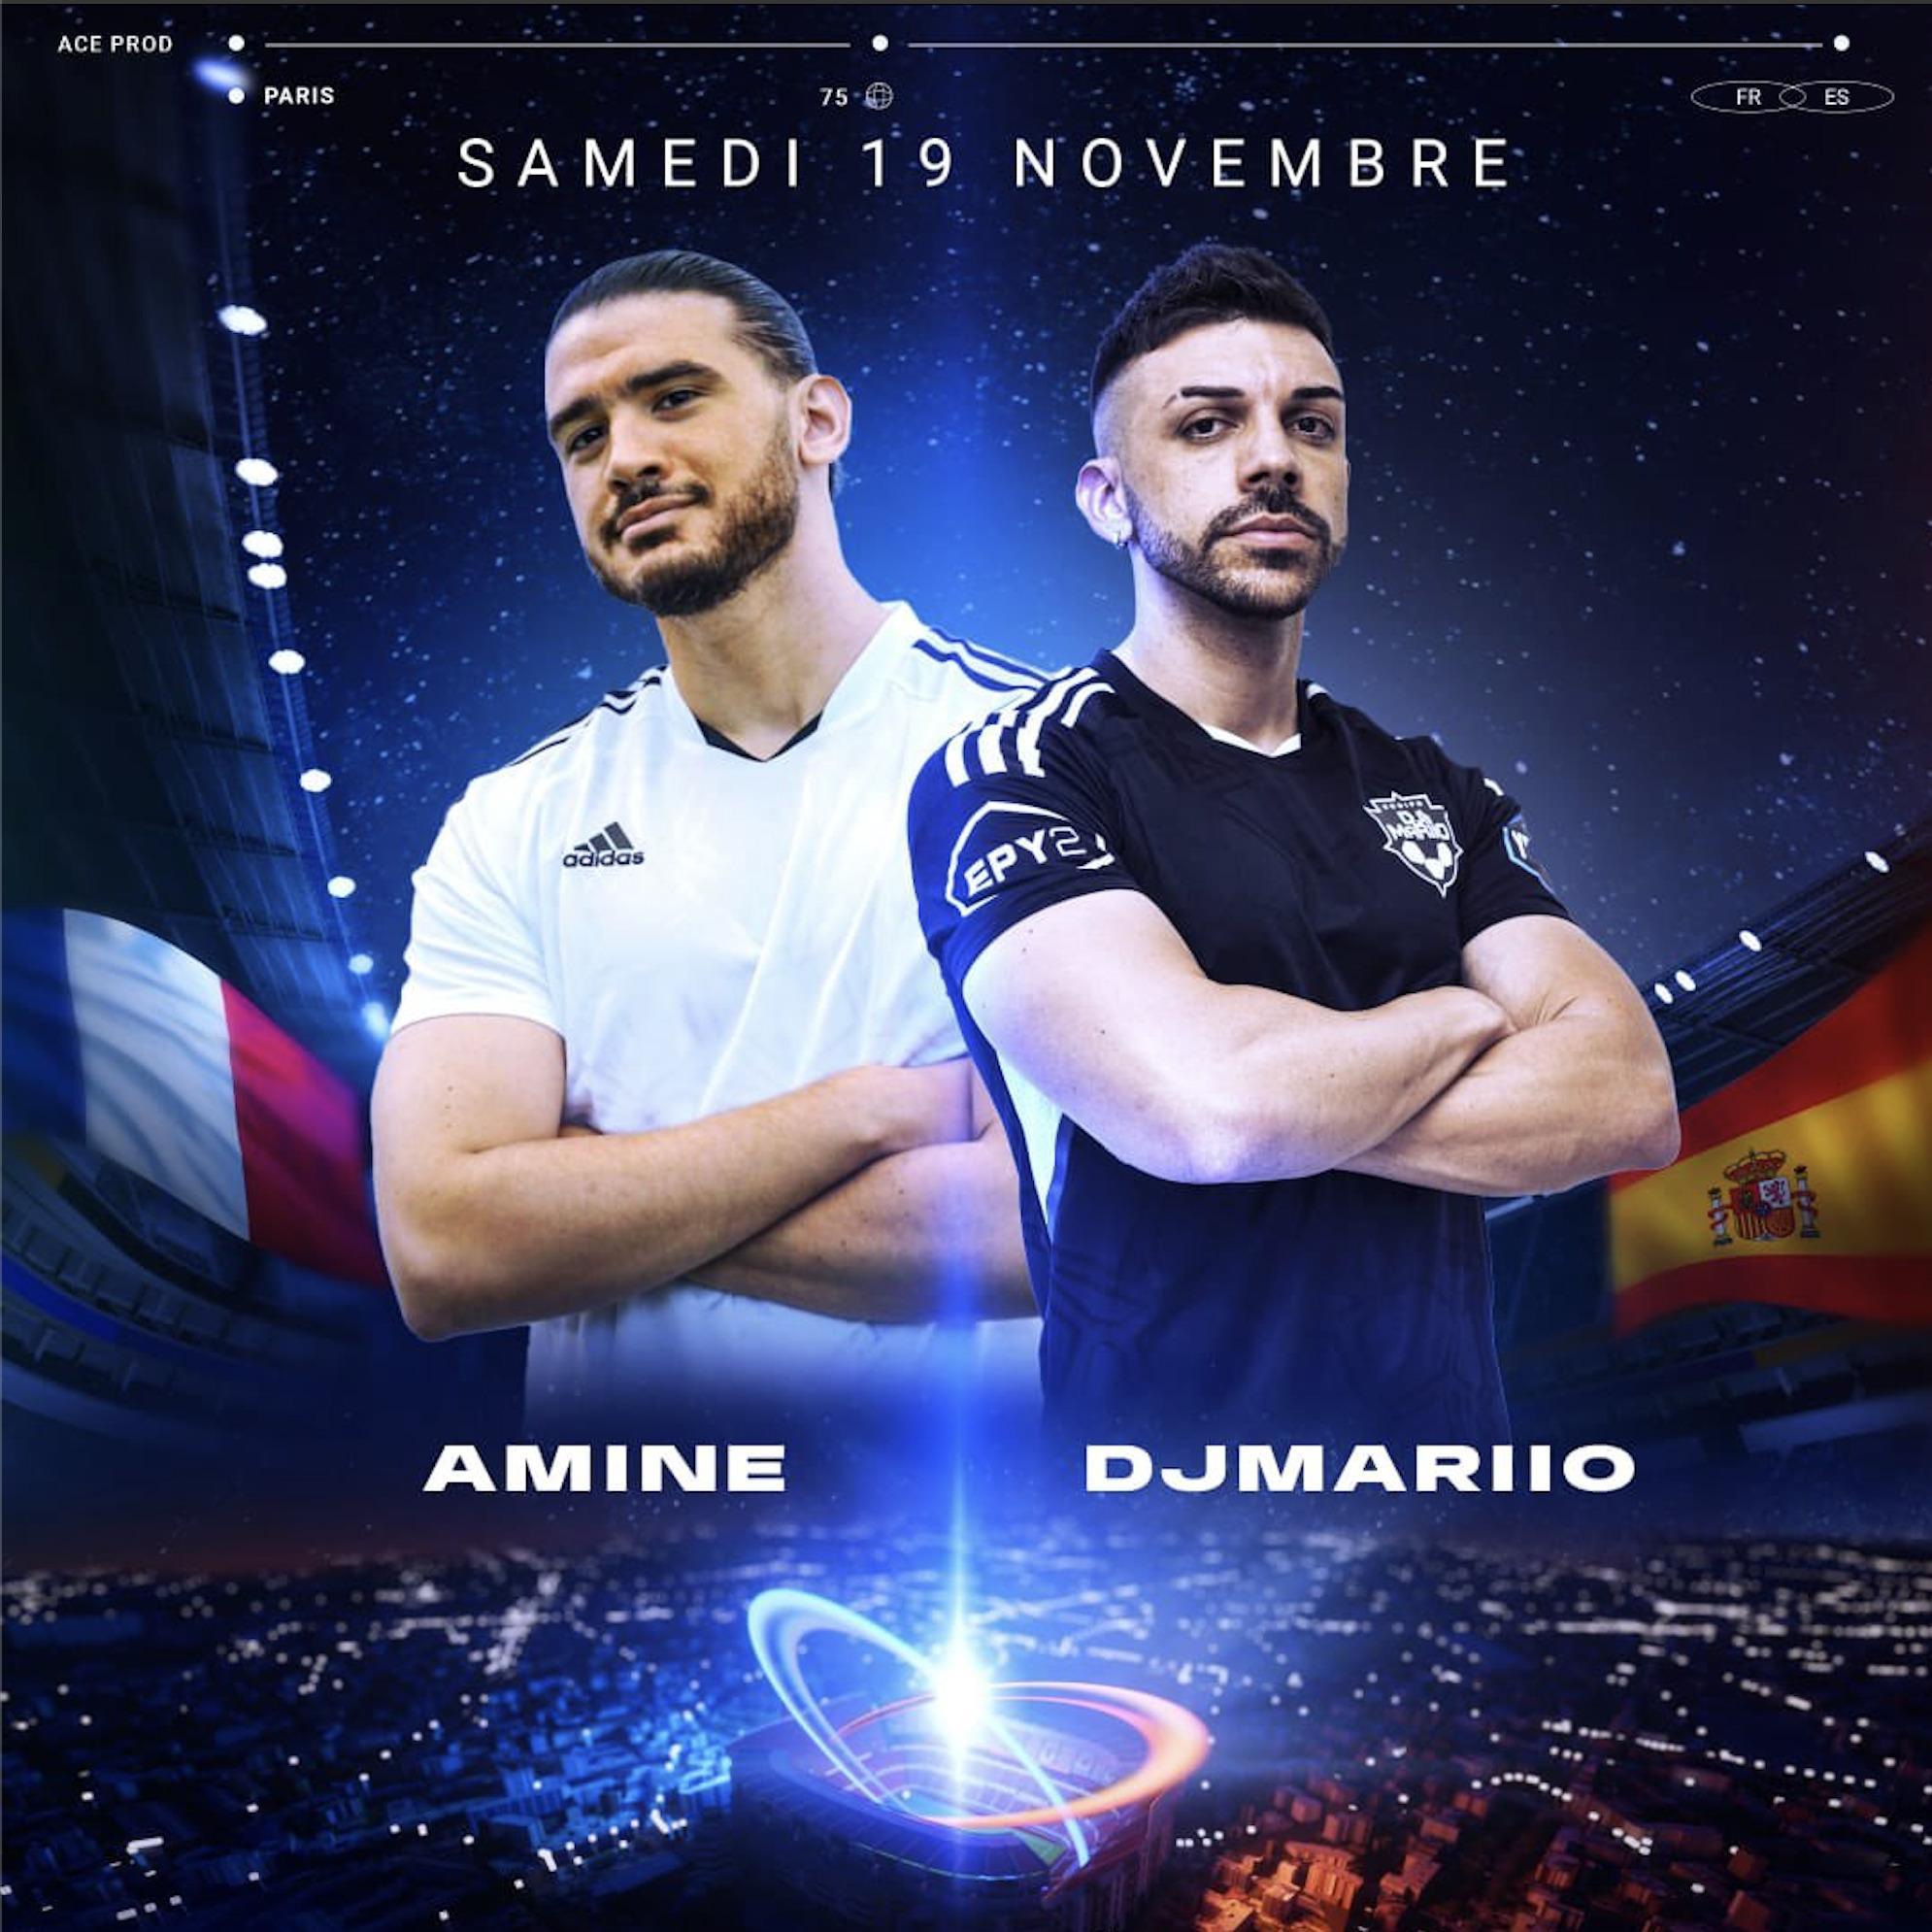 Affiche de l'événement Eleven All Stars avec Amine et DJMariio pour un match de football France - Espagne